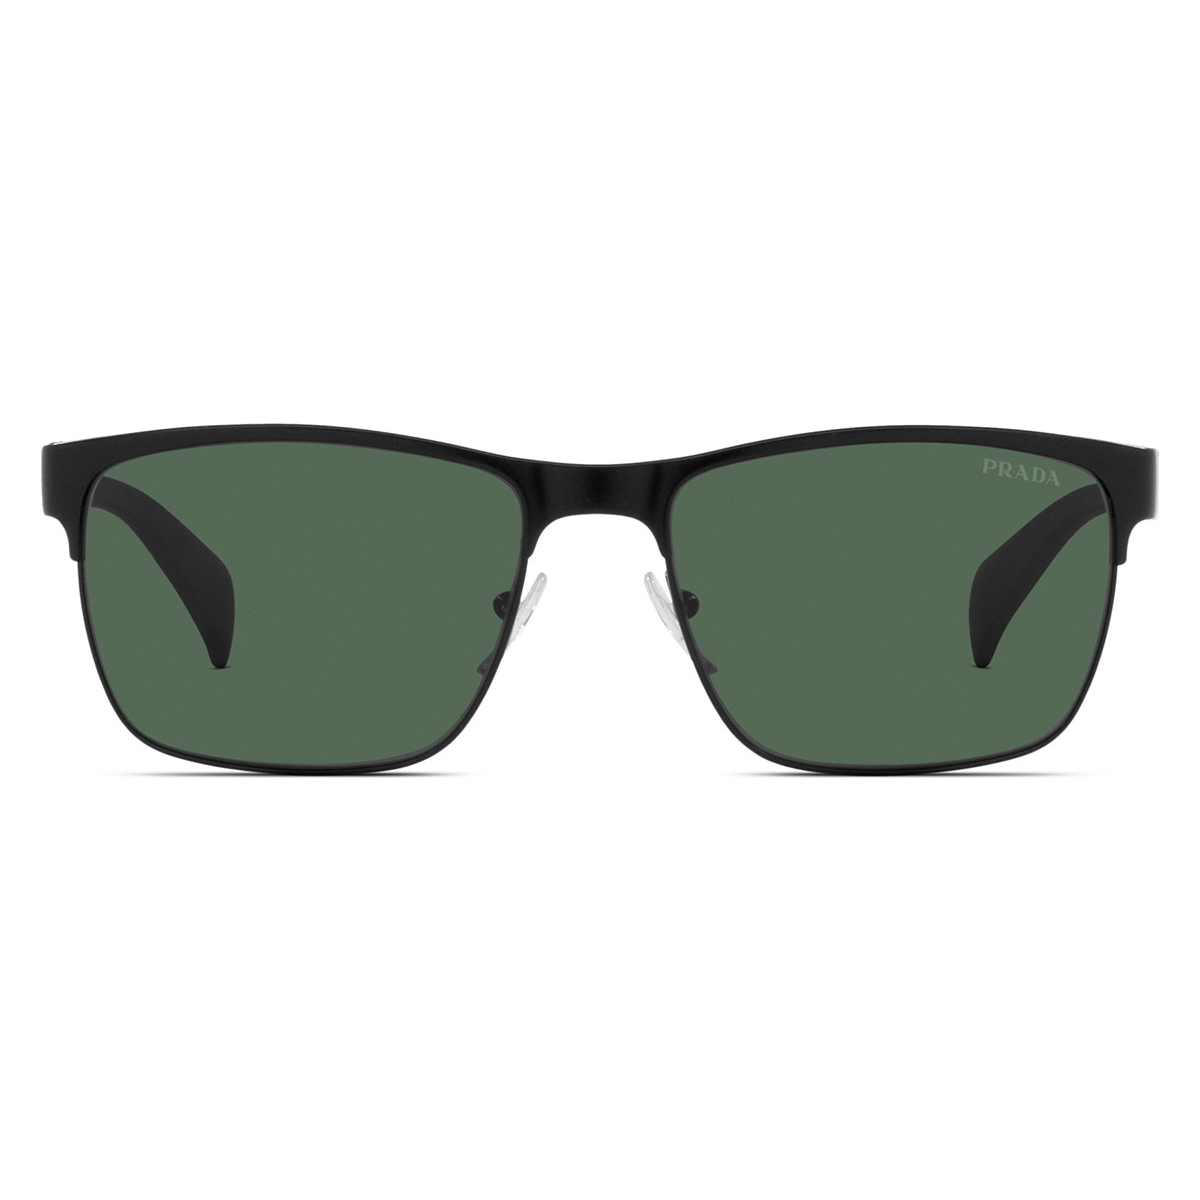 Солнцезащитные очки мужские PRADA 0PR 51OS черные - купить в Мегамаркет Москва, цена на Мегамаркет